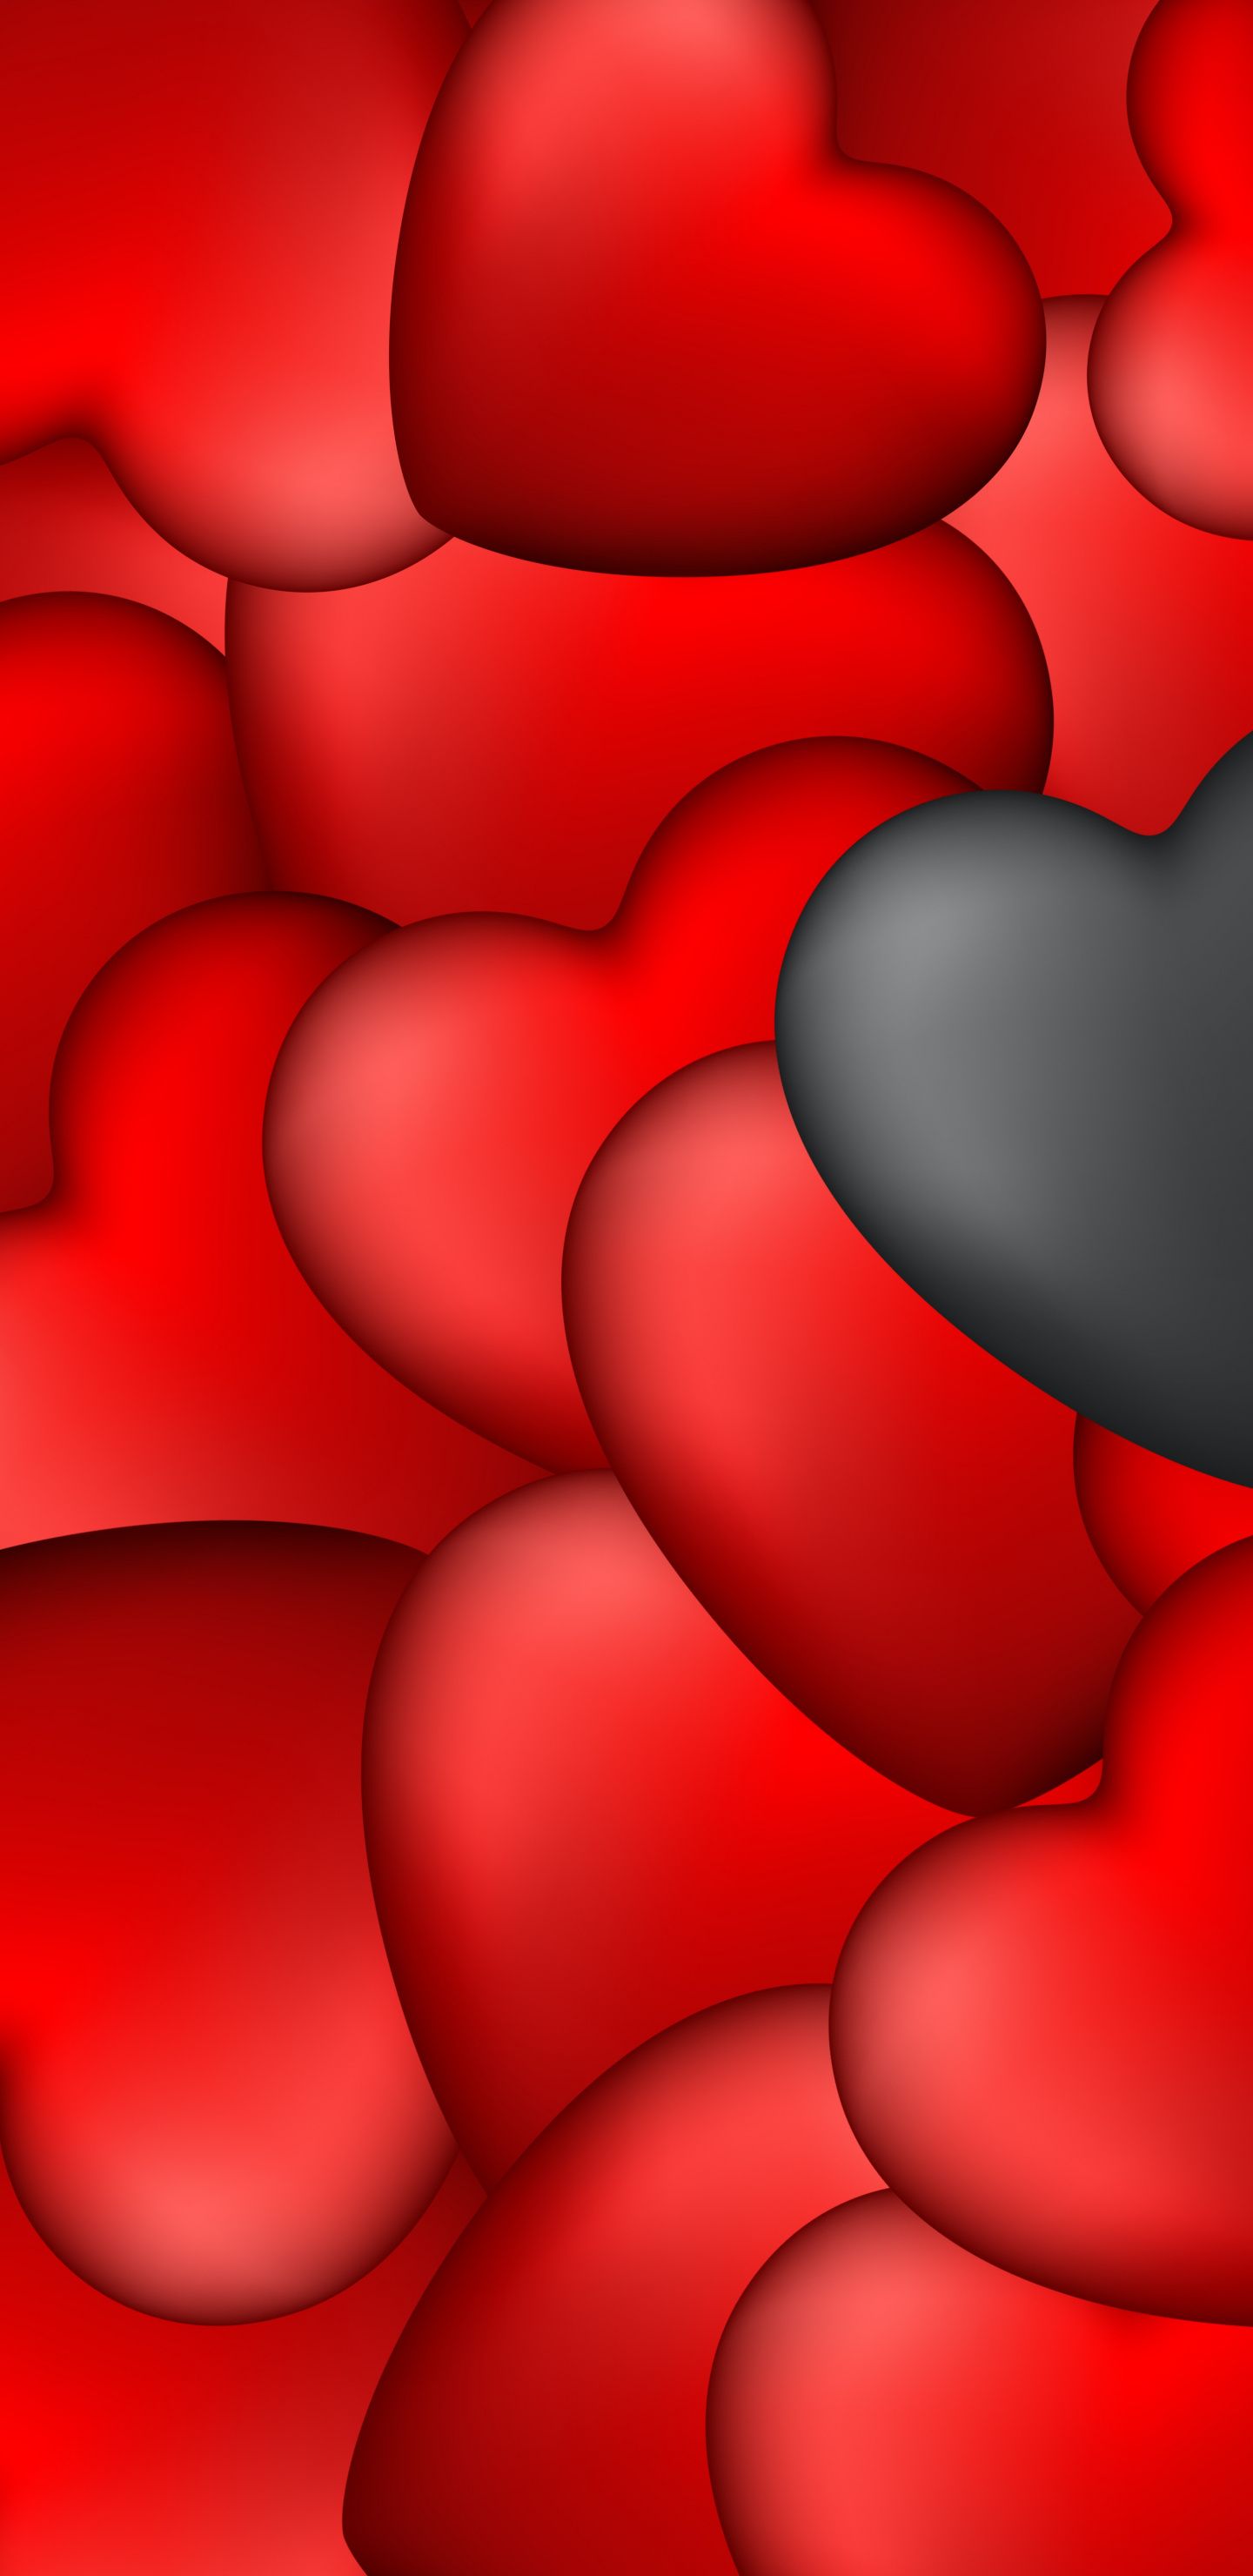 46 Red and Black Heart Wallpaper  WallpaperSafari